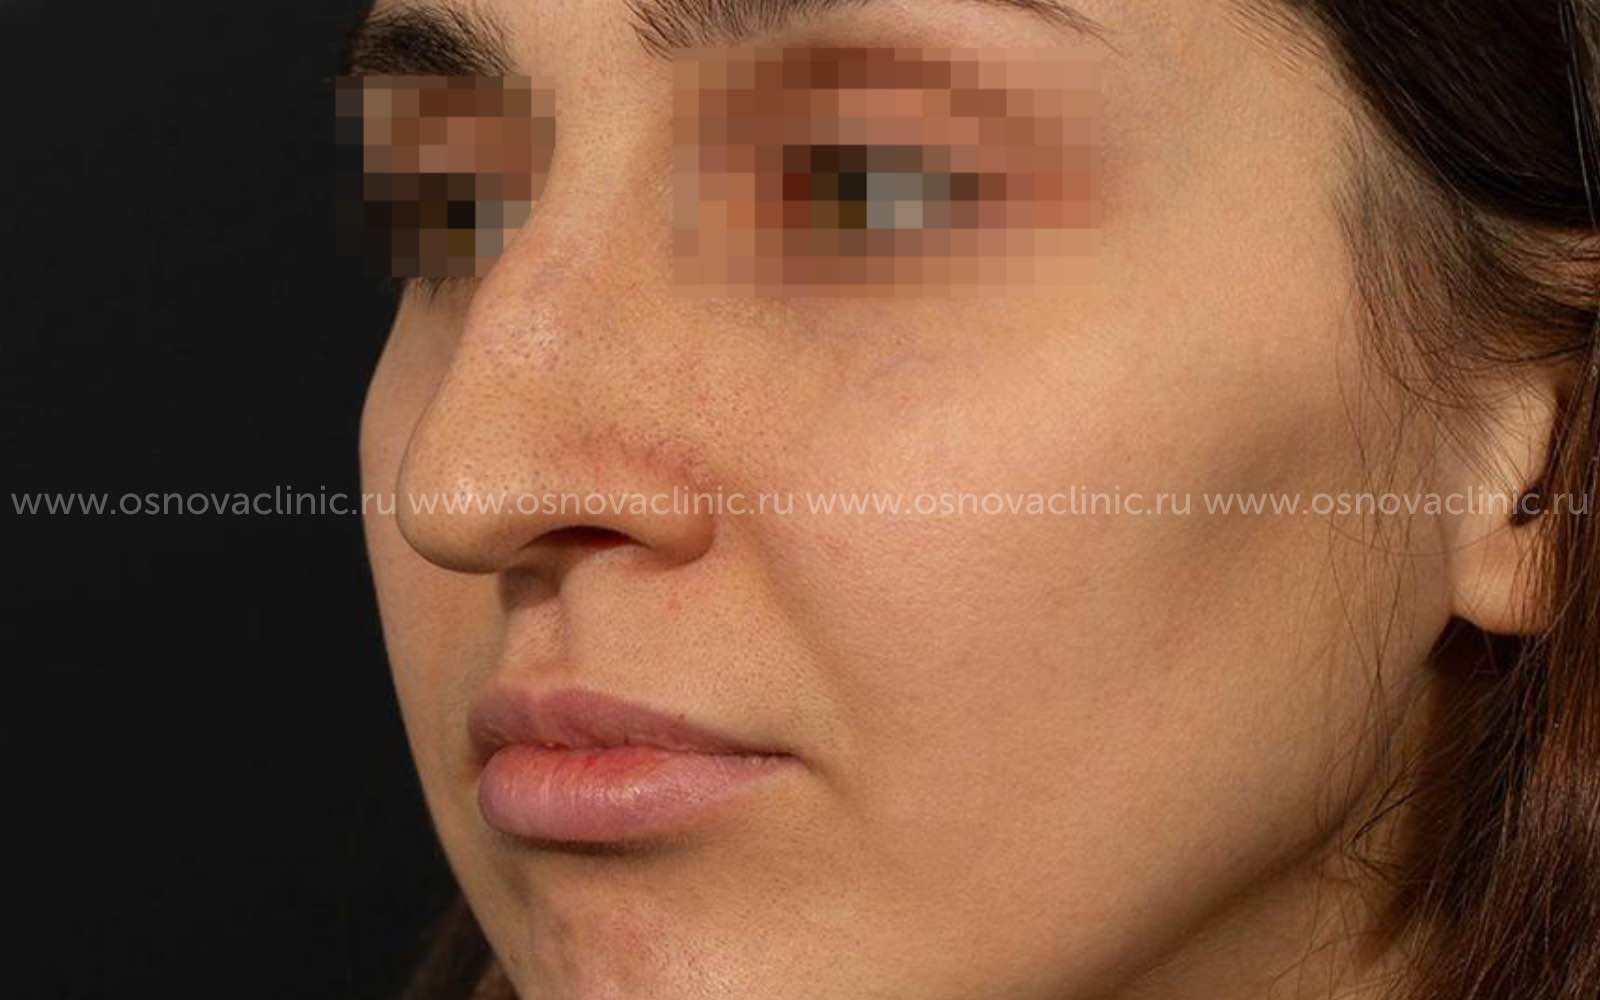 Как проходит операция по исправлению перегородки носа?